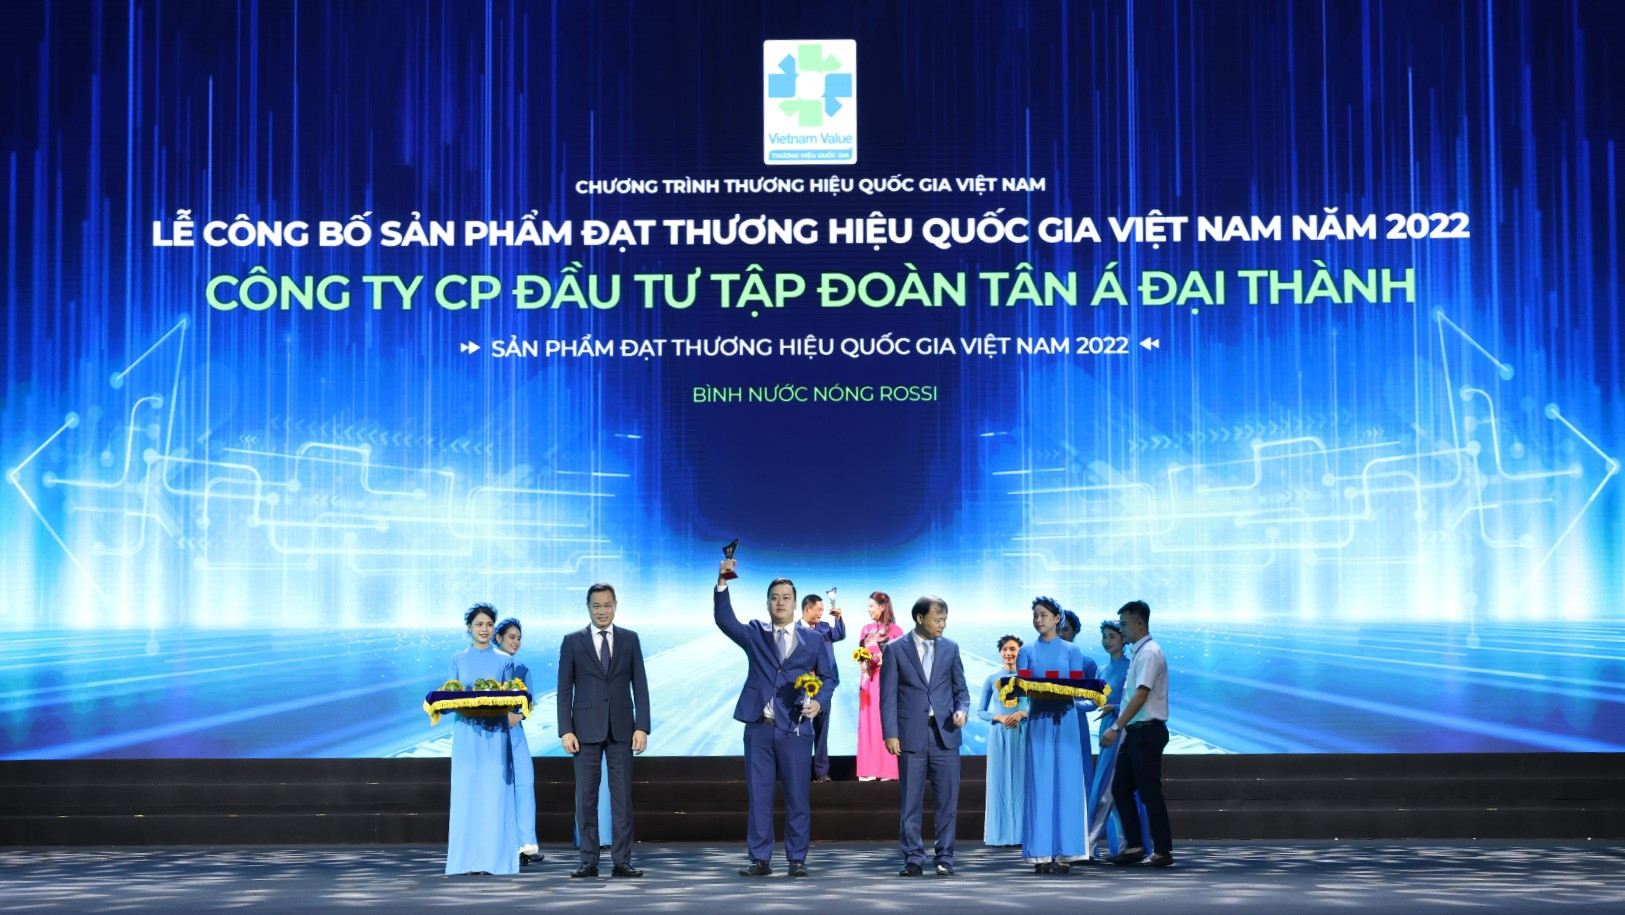 Ông Nguyễn Anh Tú, Phó TGĐ Thường trực Tập đoàn Tân Á Đại Thành nhận biểu trưng Thương hiệu Quốc gia Việt Nam.